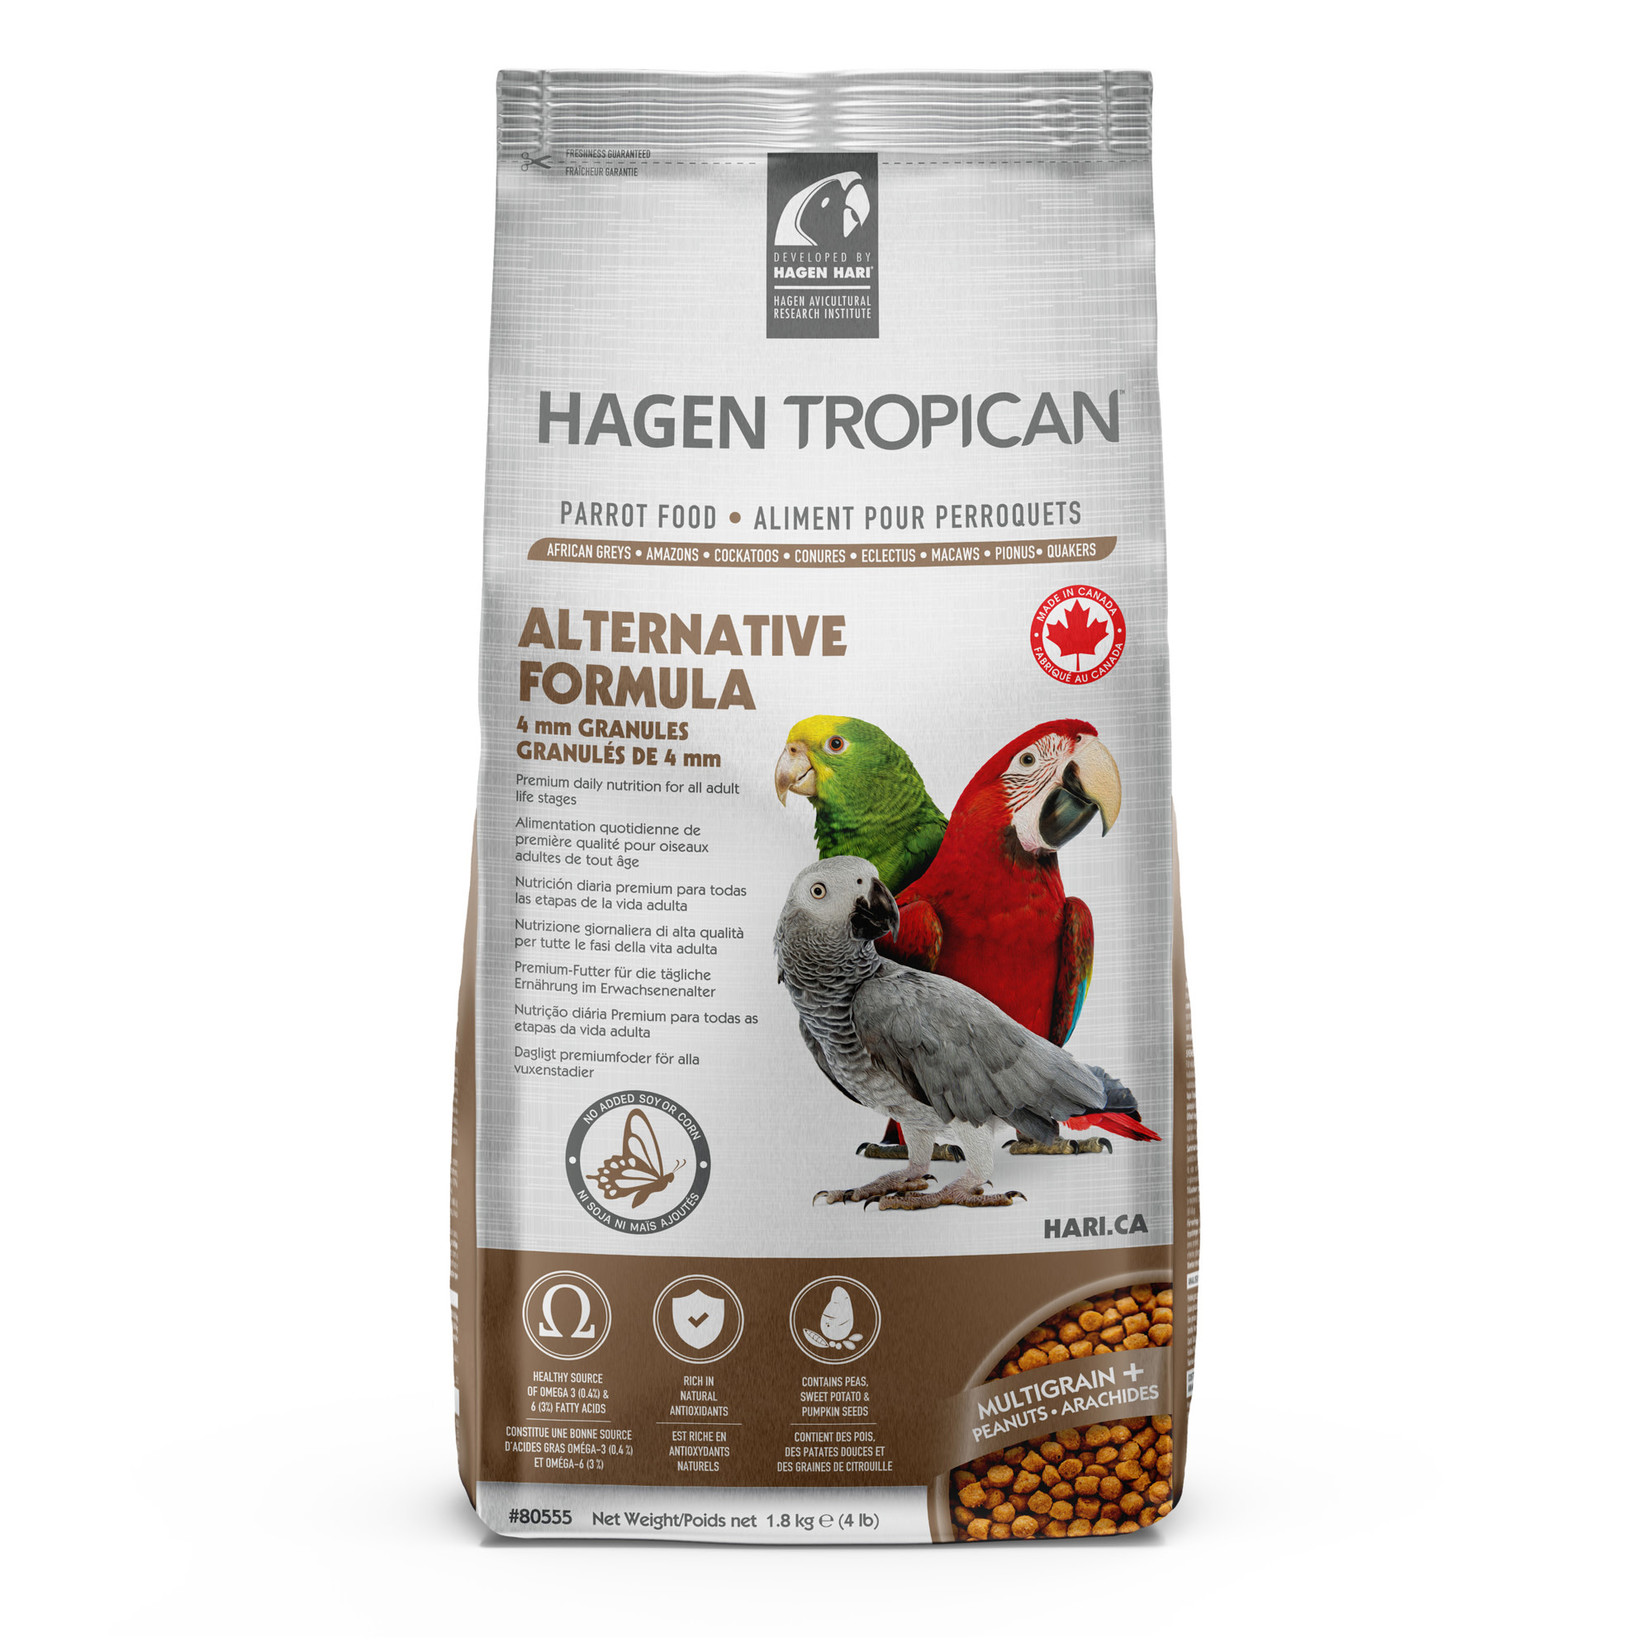 HARI Tropican Alternative Formula for Parrots - 1.8 kg (4 lb)